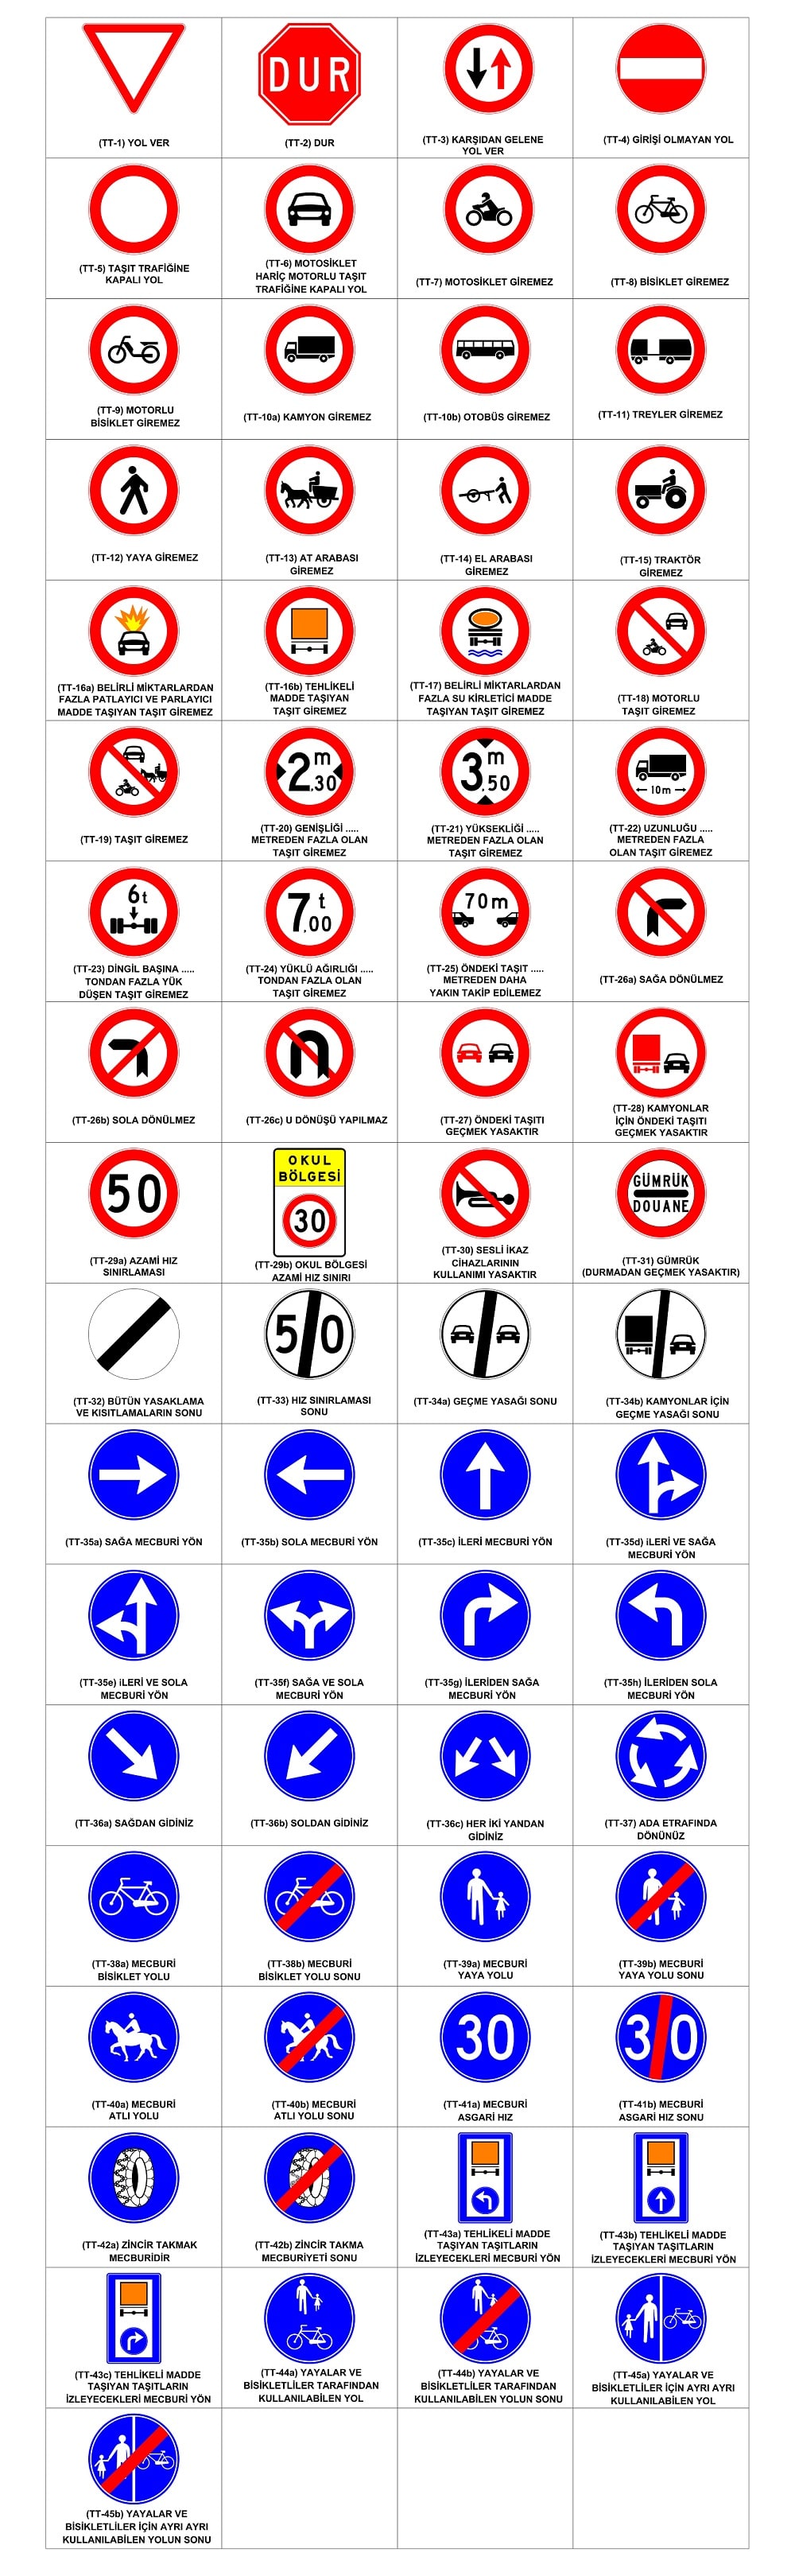 trafik tanzim işaretleri nelerdir